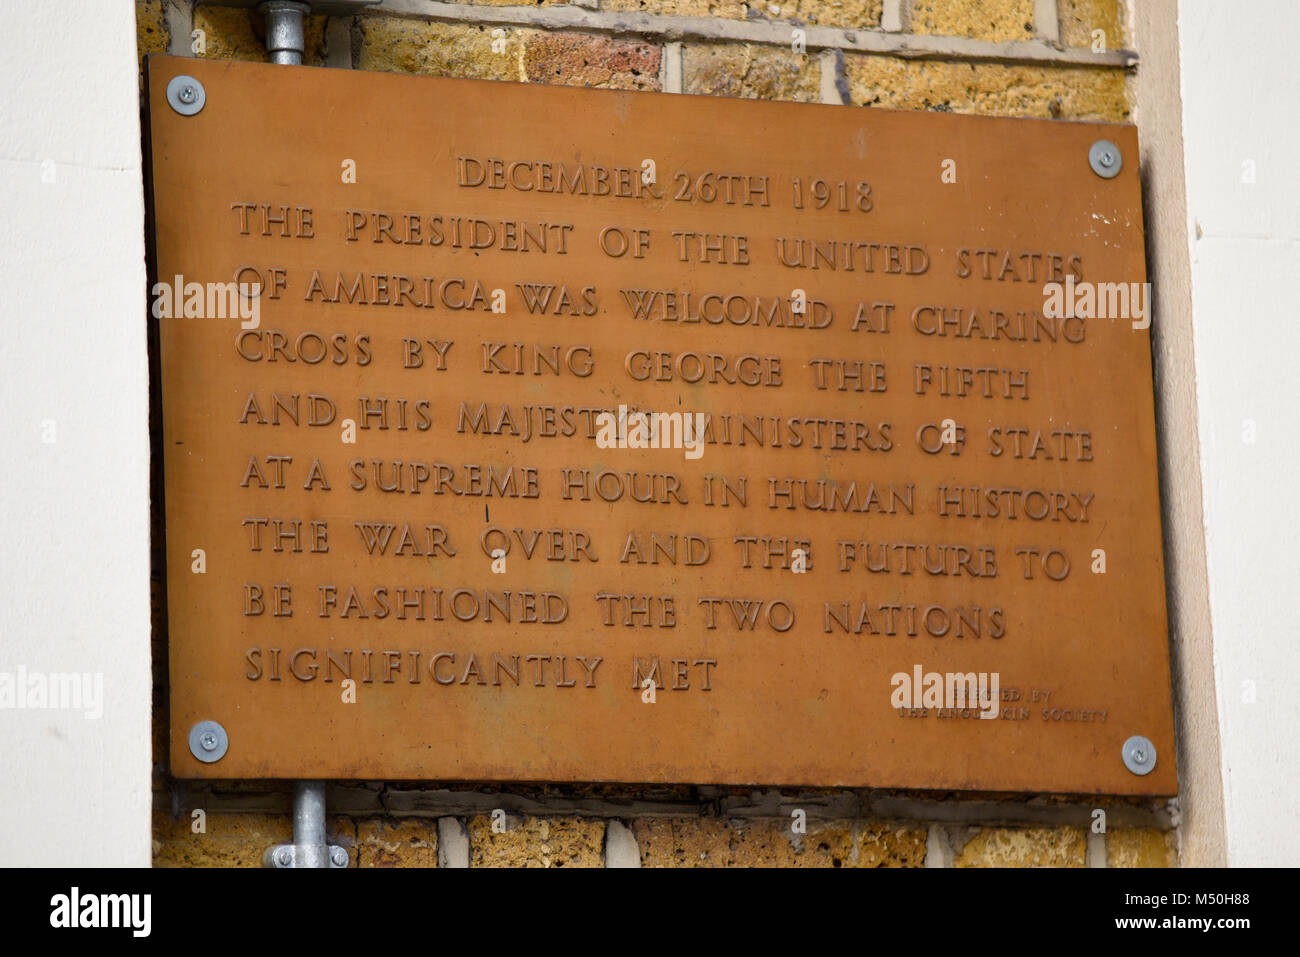 Plaque commémorant la visite du président américain Woodrow Wilson à la gare de Charing Cross visiter le roi George V en 1918. Érigée par l'angle de la société Kin Banque D'Images